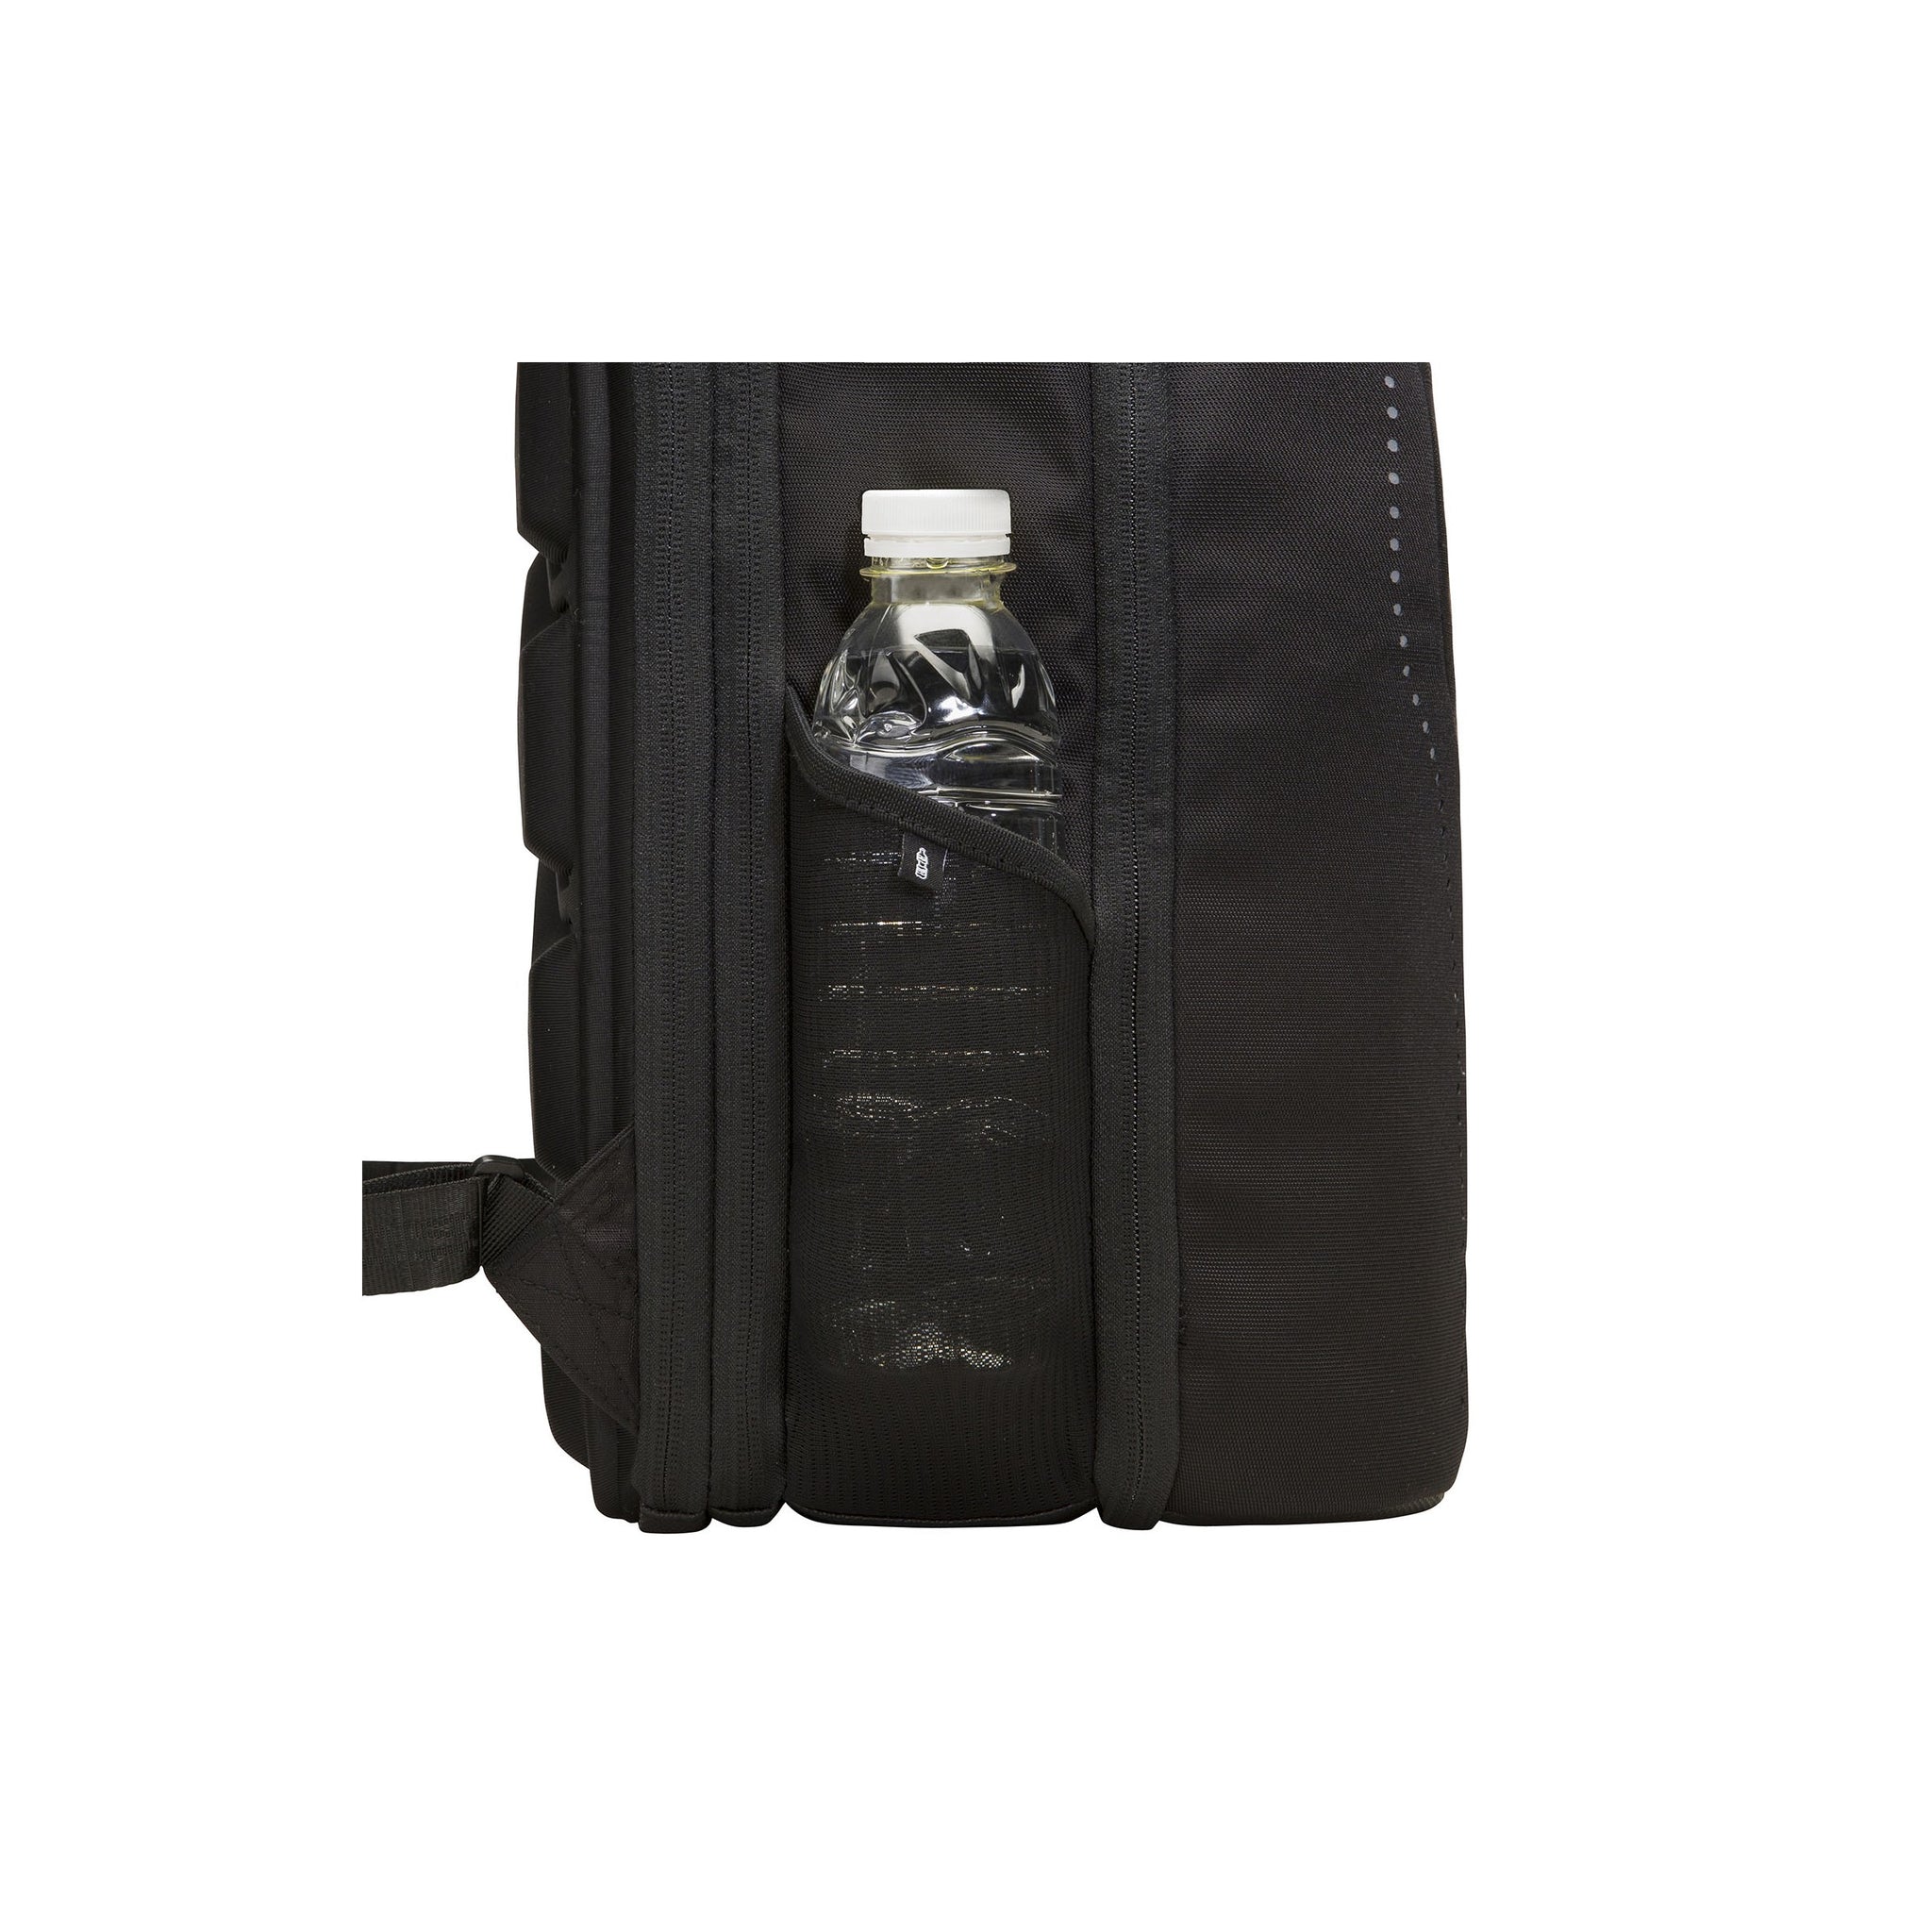 MUB TRAVELER MEDIUM Black Pearl - The BiarritzI Deluxe Travel Backpack for Men